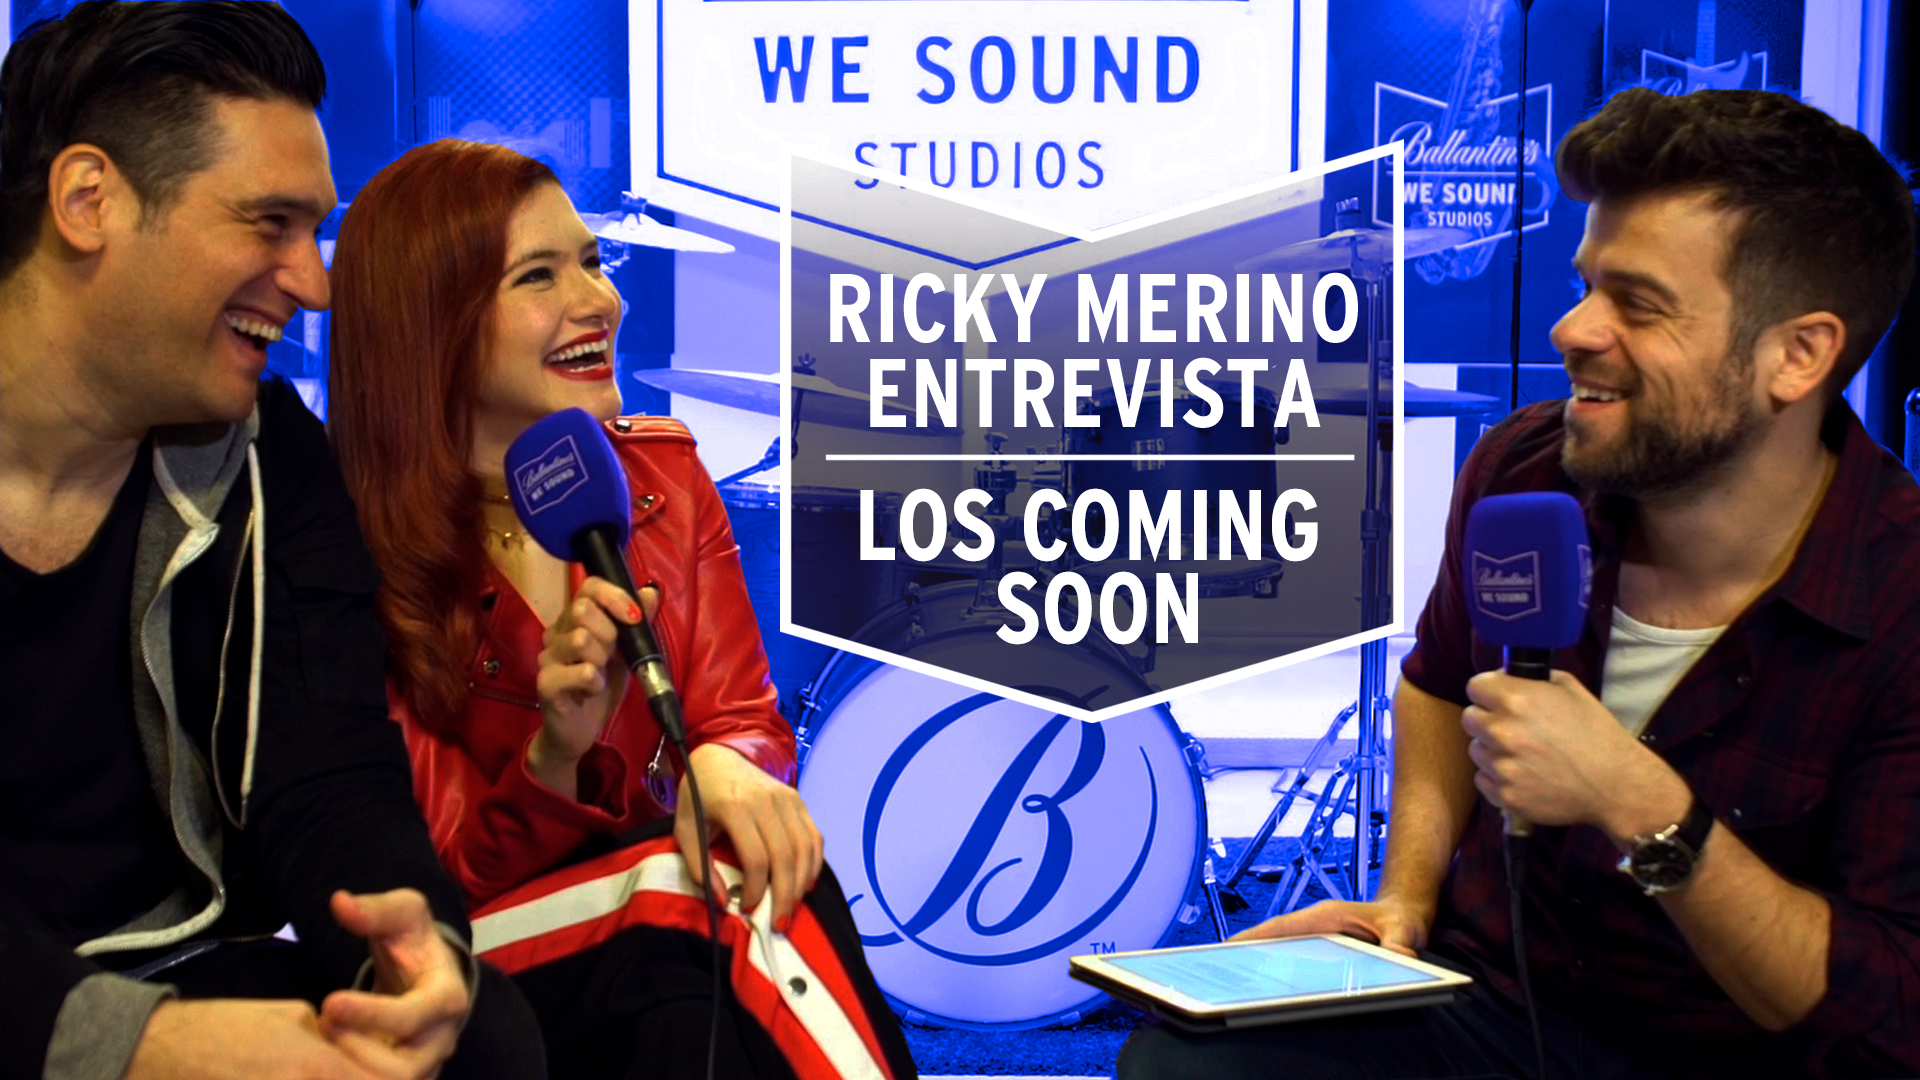 Temporada 1 Ricky Merino entrevista a 'Los Coming Soon', teloneros de 'Who Made Who' en el 'Modern Sound Culture' - We Sound